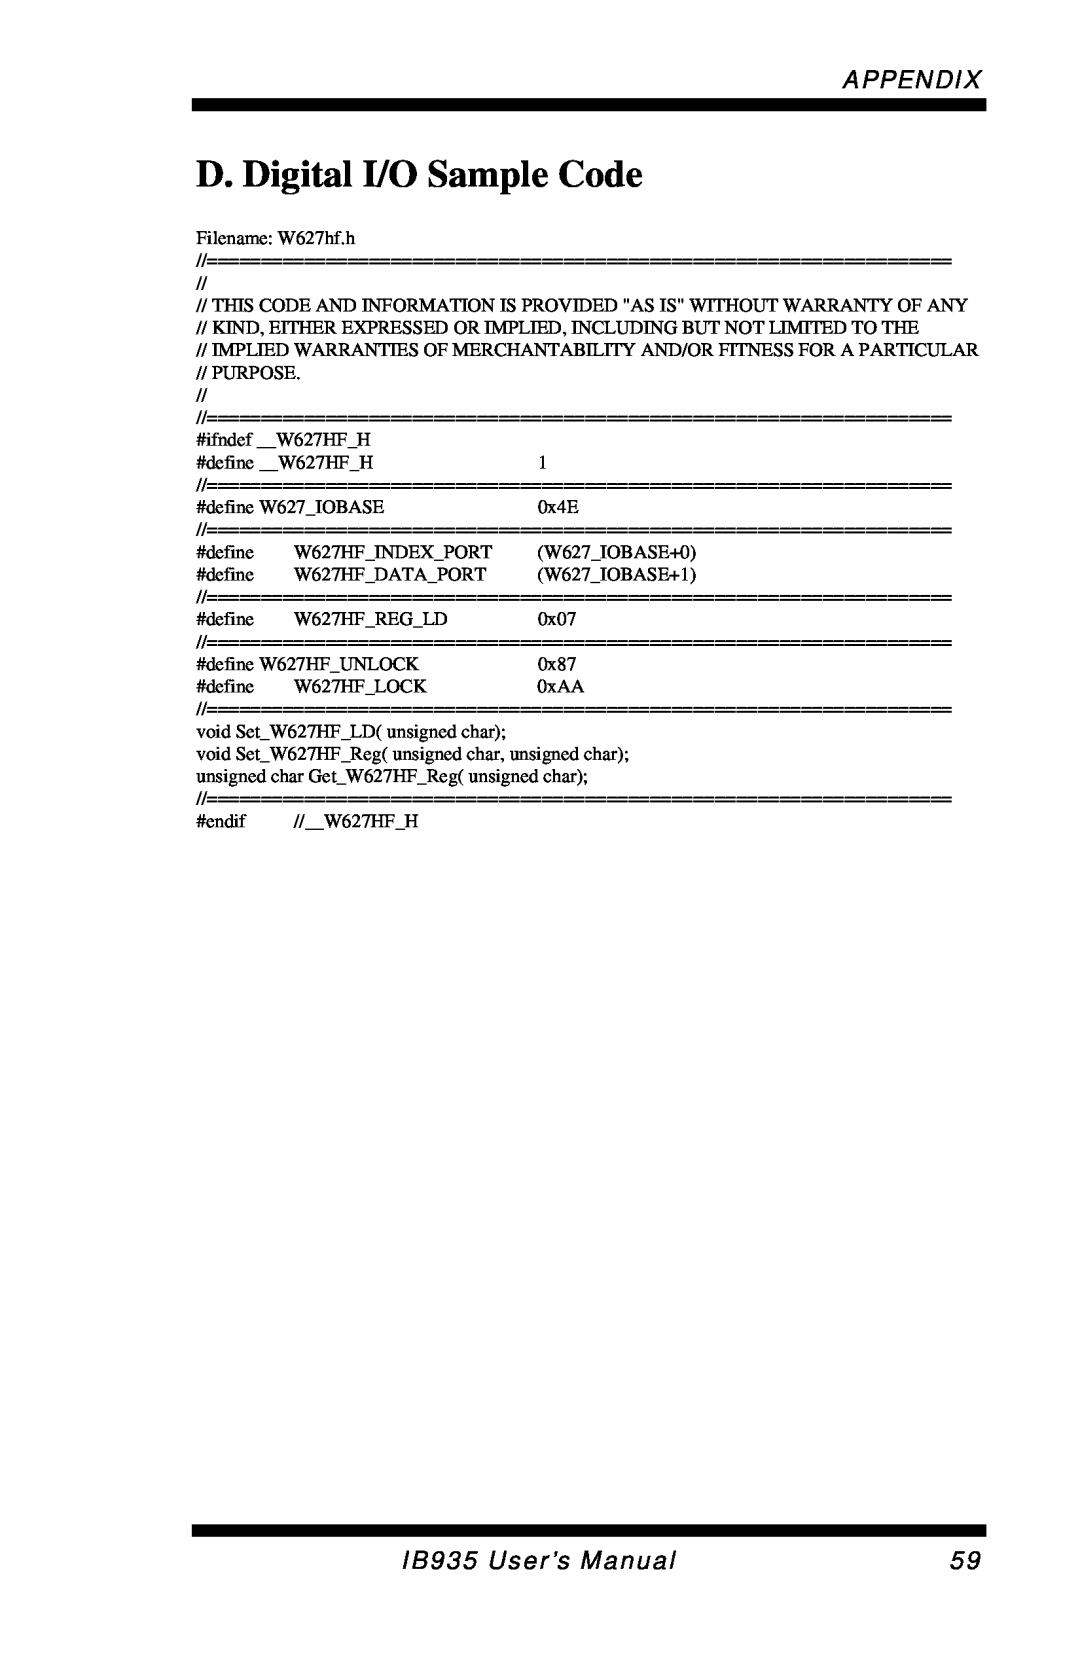 Intel user manual D. Digital I/O Sample Code, Appendix, IB935 User’s Manual 